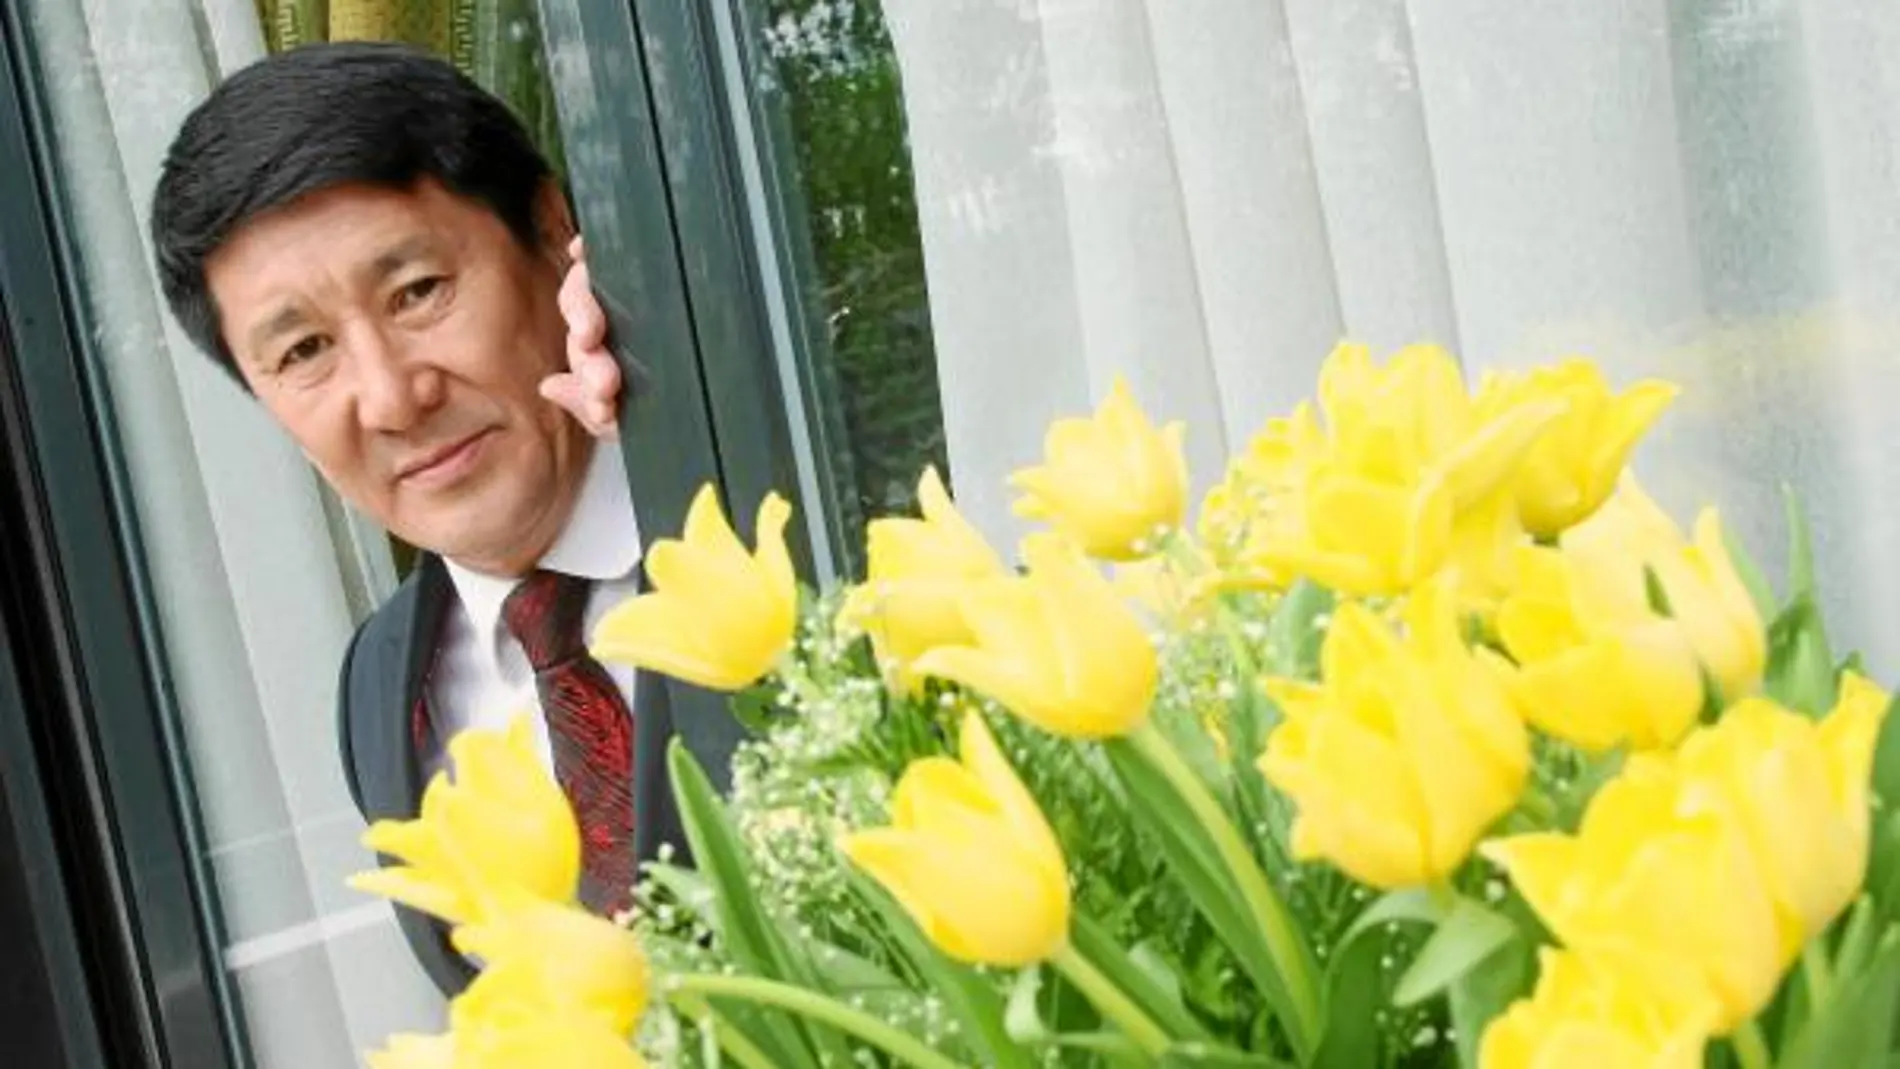 El representante diplomático de Kazajistán posa junto a unos tulipanes de su país. Asegura que su origen es kazajo y no holandés como se cree